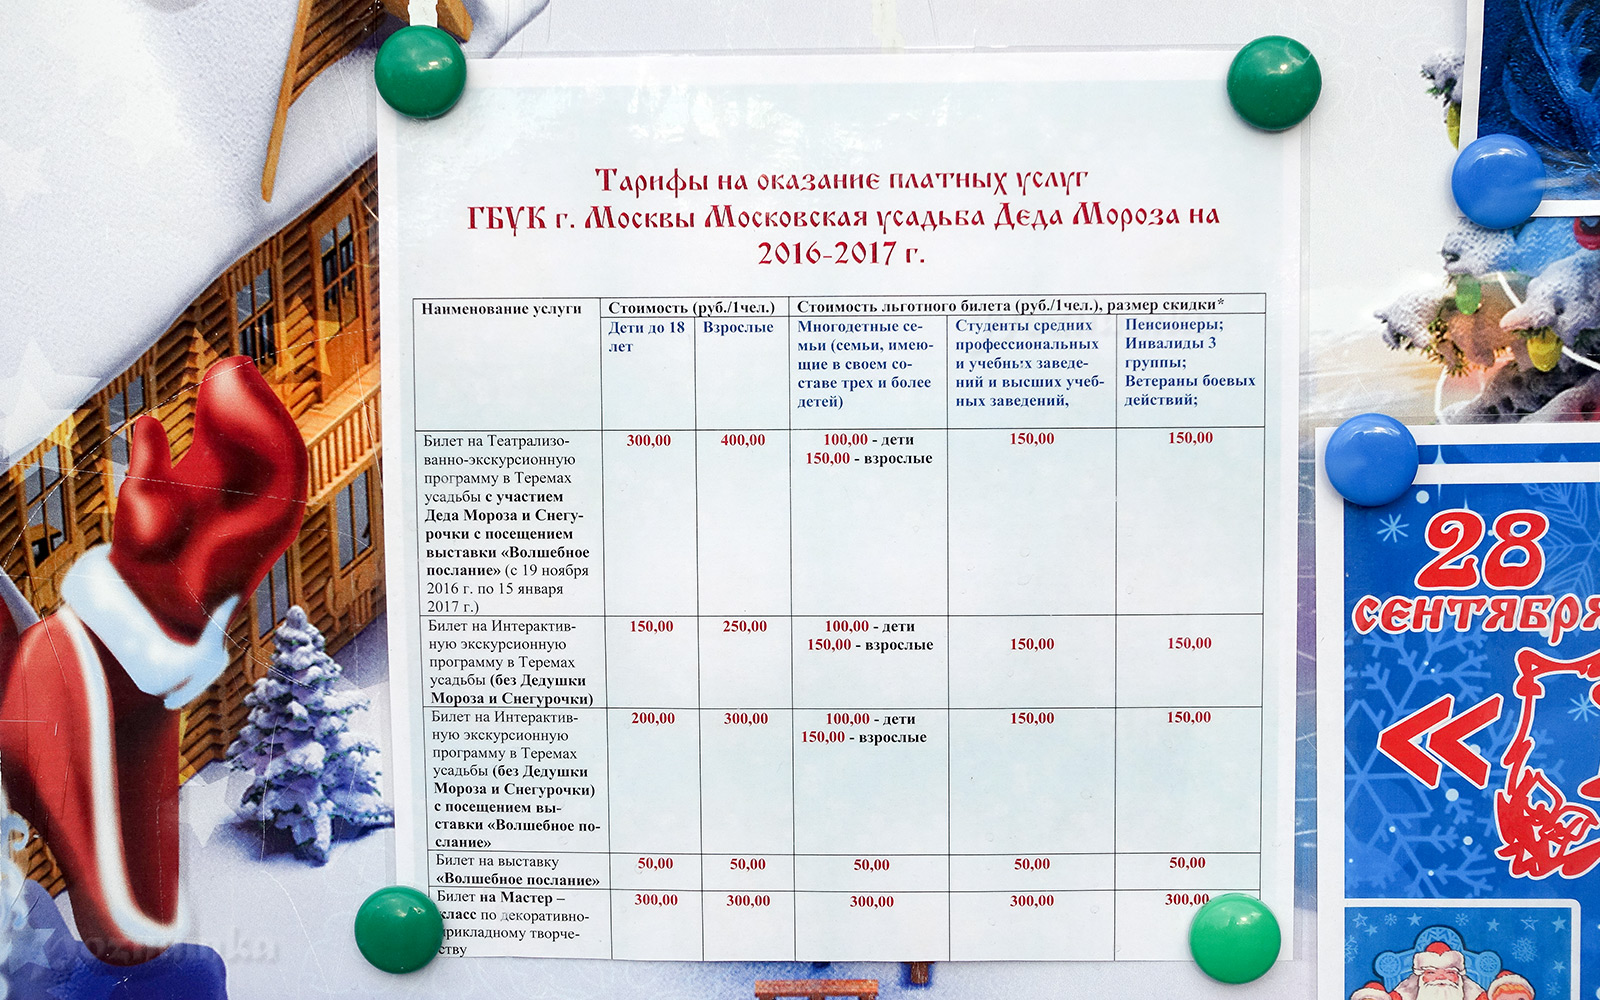 Зимний отдых в России — туристические тренды